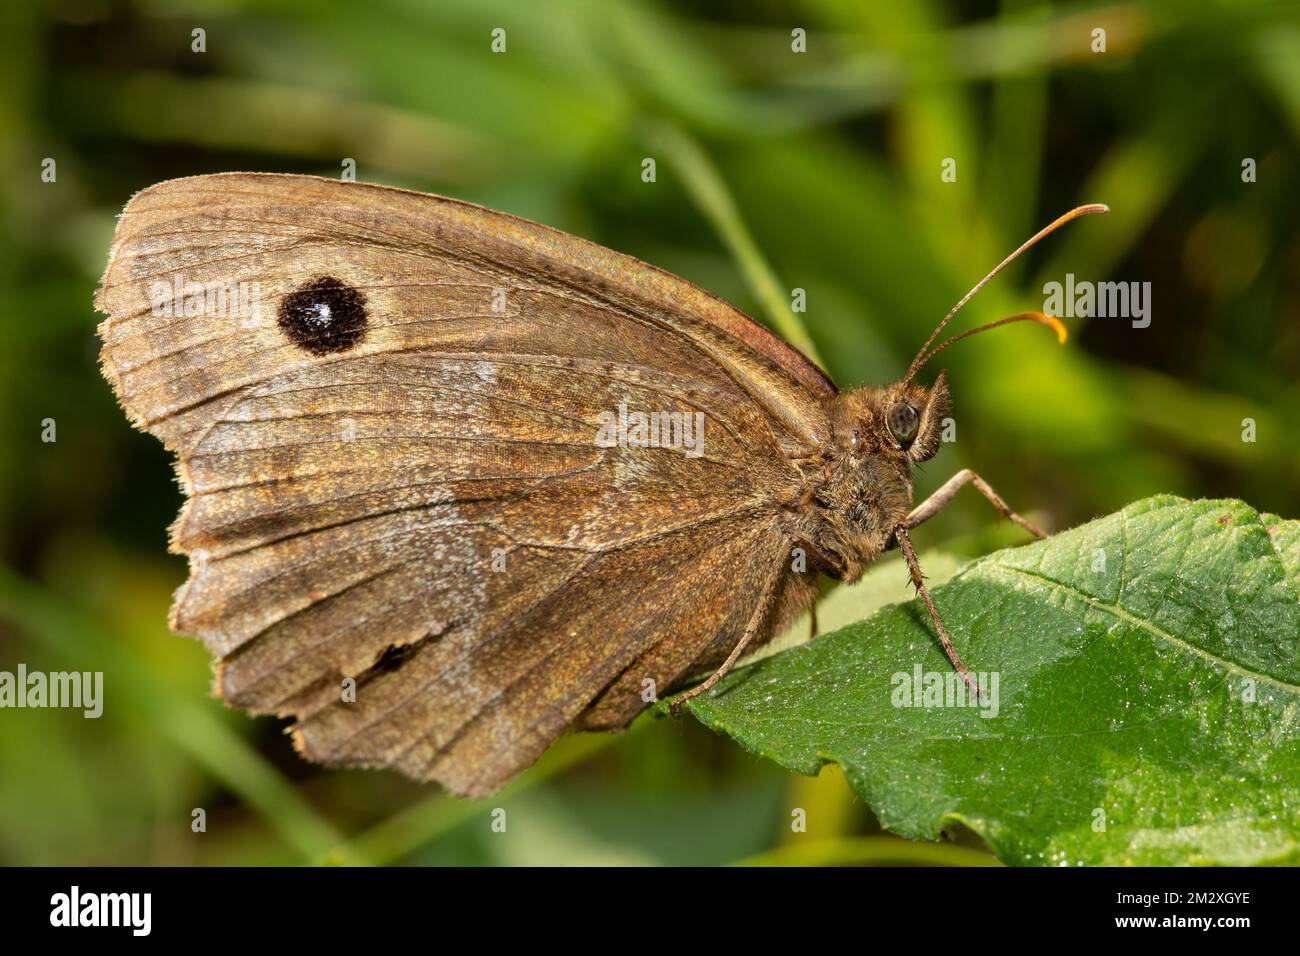 Orrifoglio di legno dagli occhi blu, farfalla di Coreye blu con ali chiuse che siedono sulla foglia verde destra avvistata Foto Stock